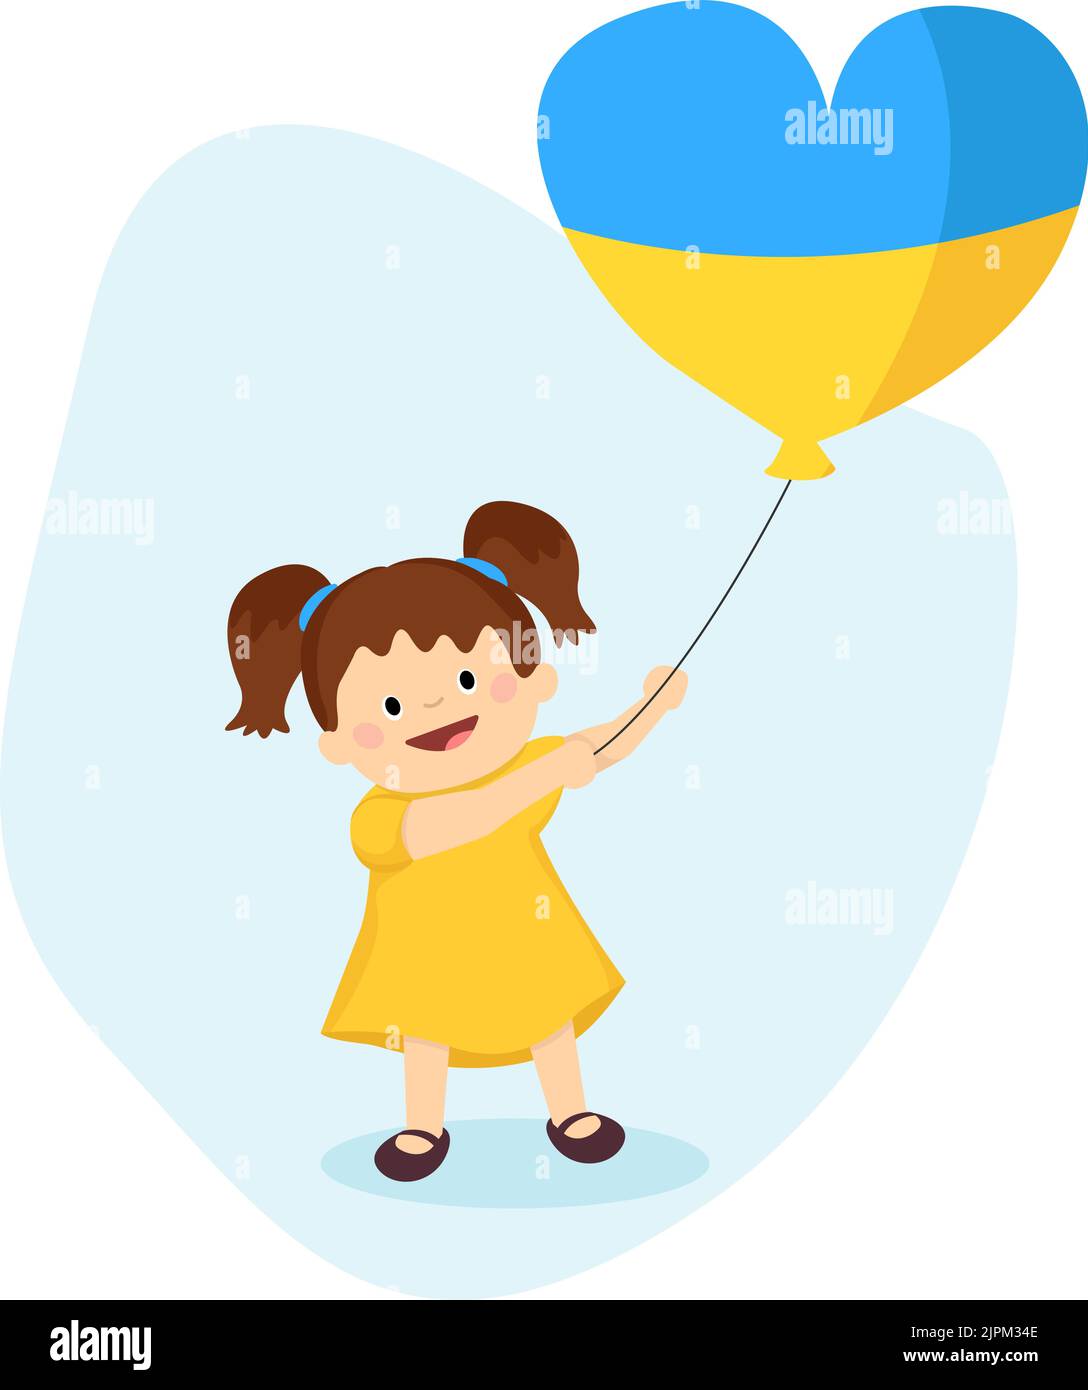 Ucraina ragazza con palloncino in colori bandiera Ucraina. Pregate per l'Ucraina. Immagine vettoriale in stile piatto. Illustrazione Vettoriale